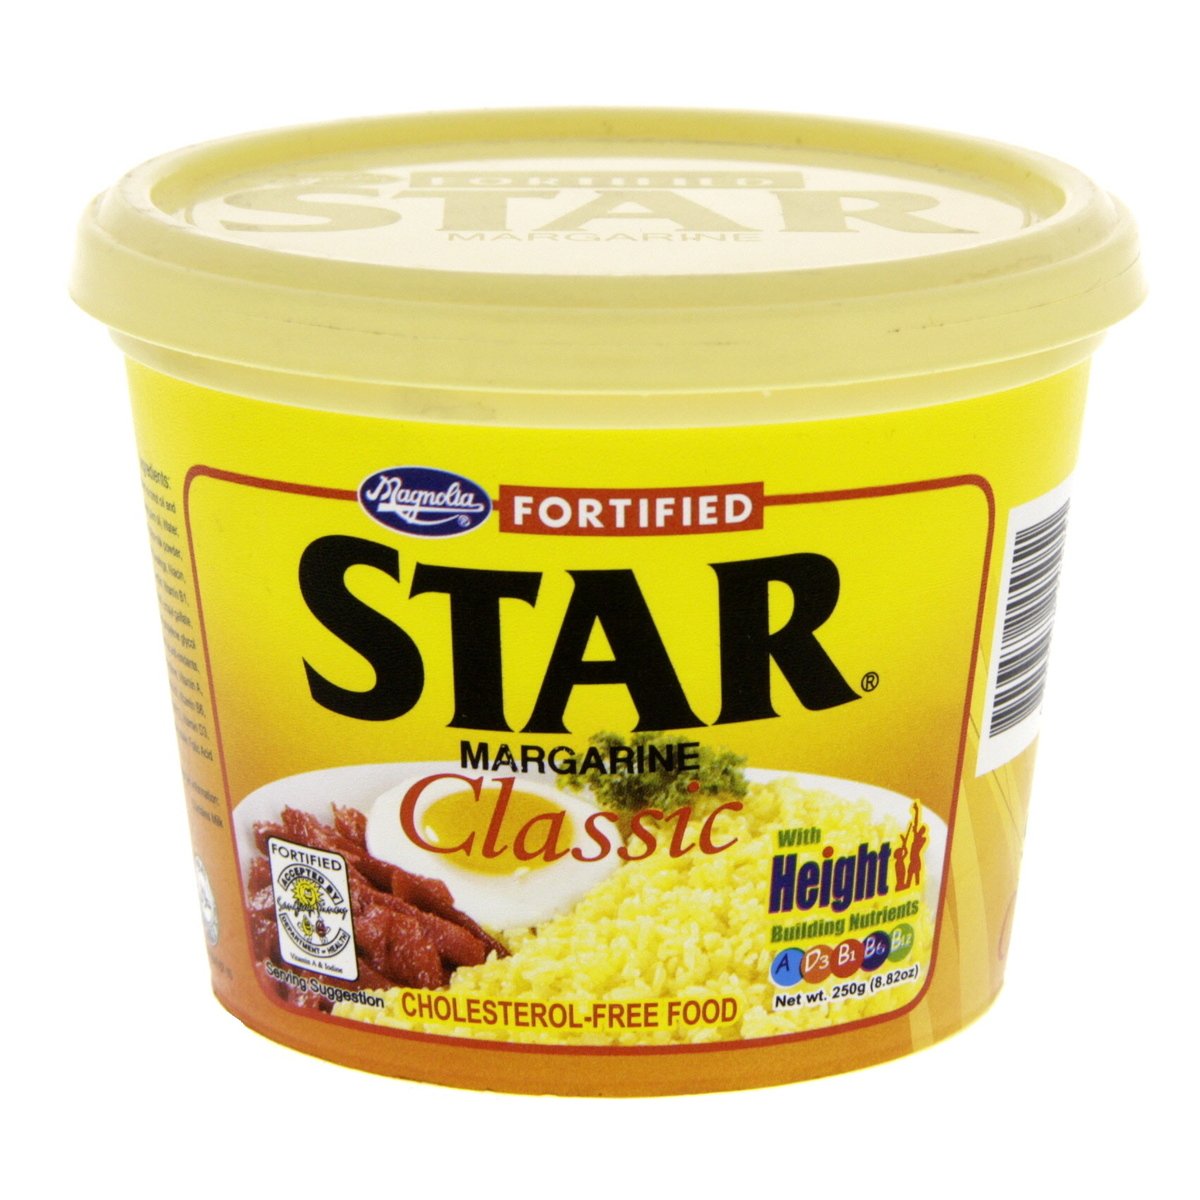 Buy Star Fortified Margarine 250 g Online at Best Price | Filipino | Lulu UAE in UAE